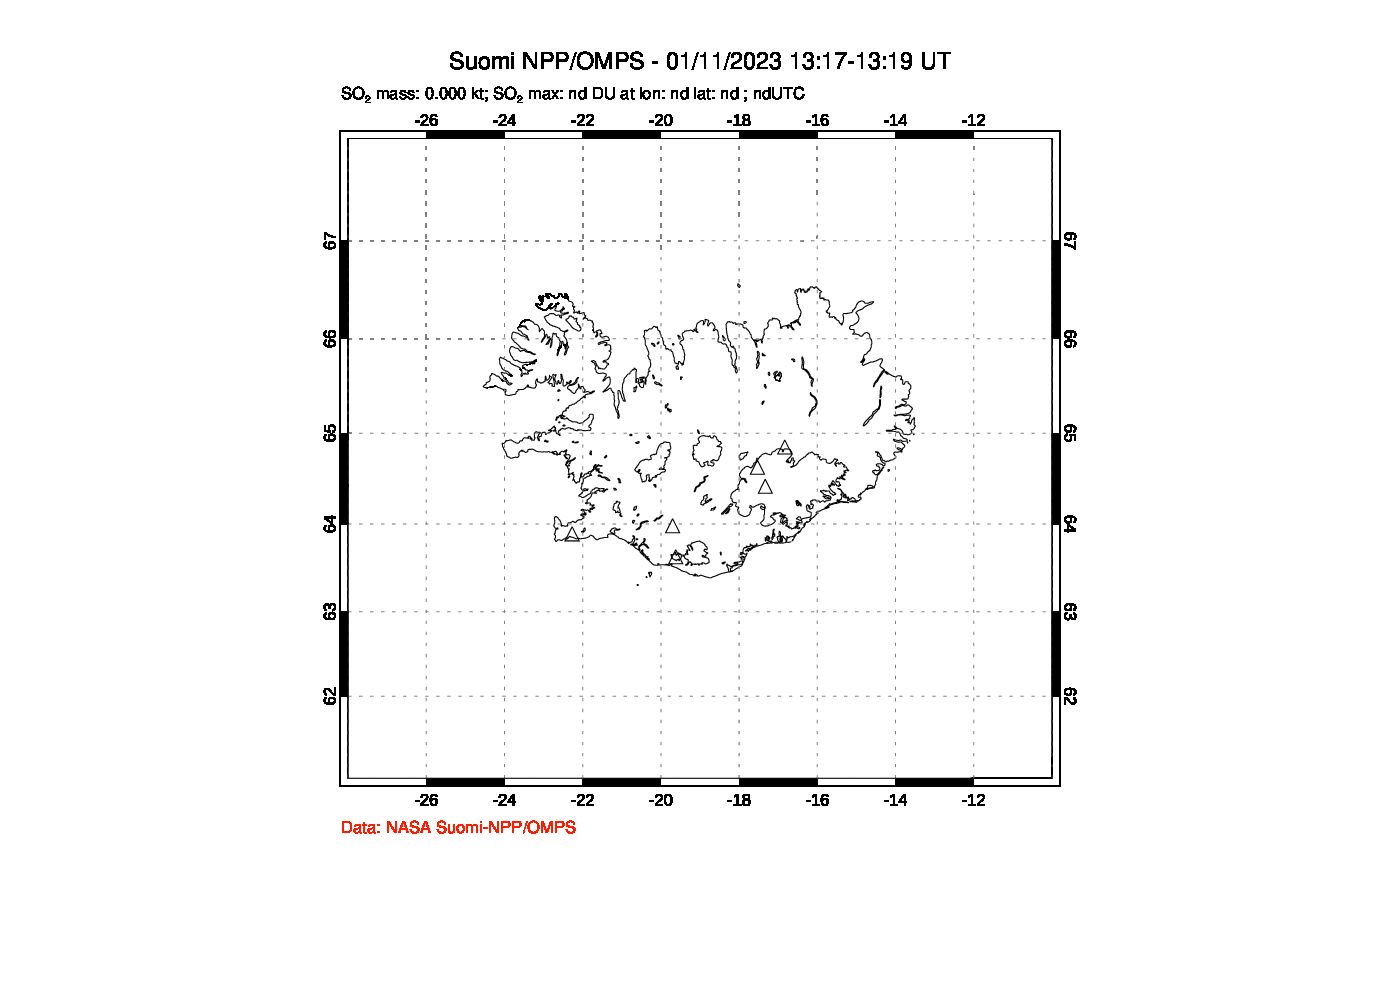 A sulfur dioxide image over Iceland on Jan 11, 2023.